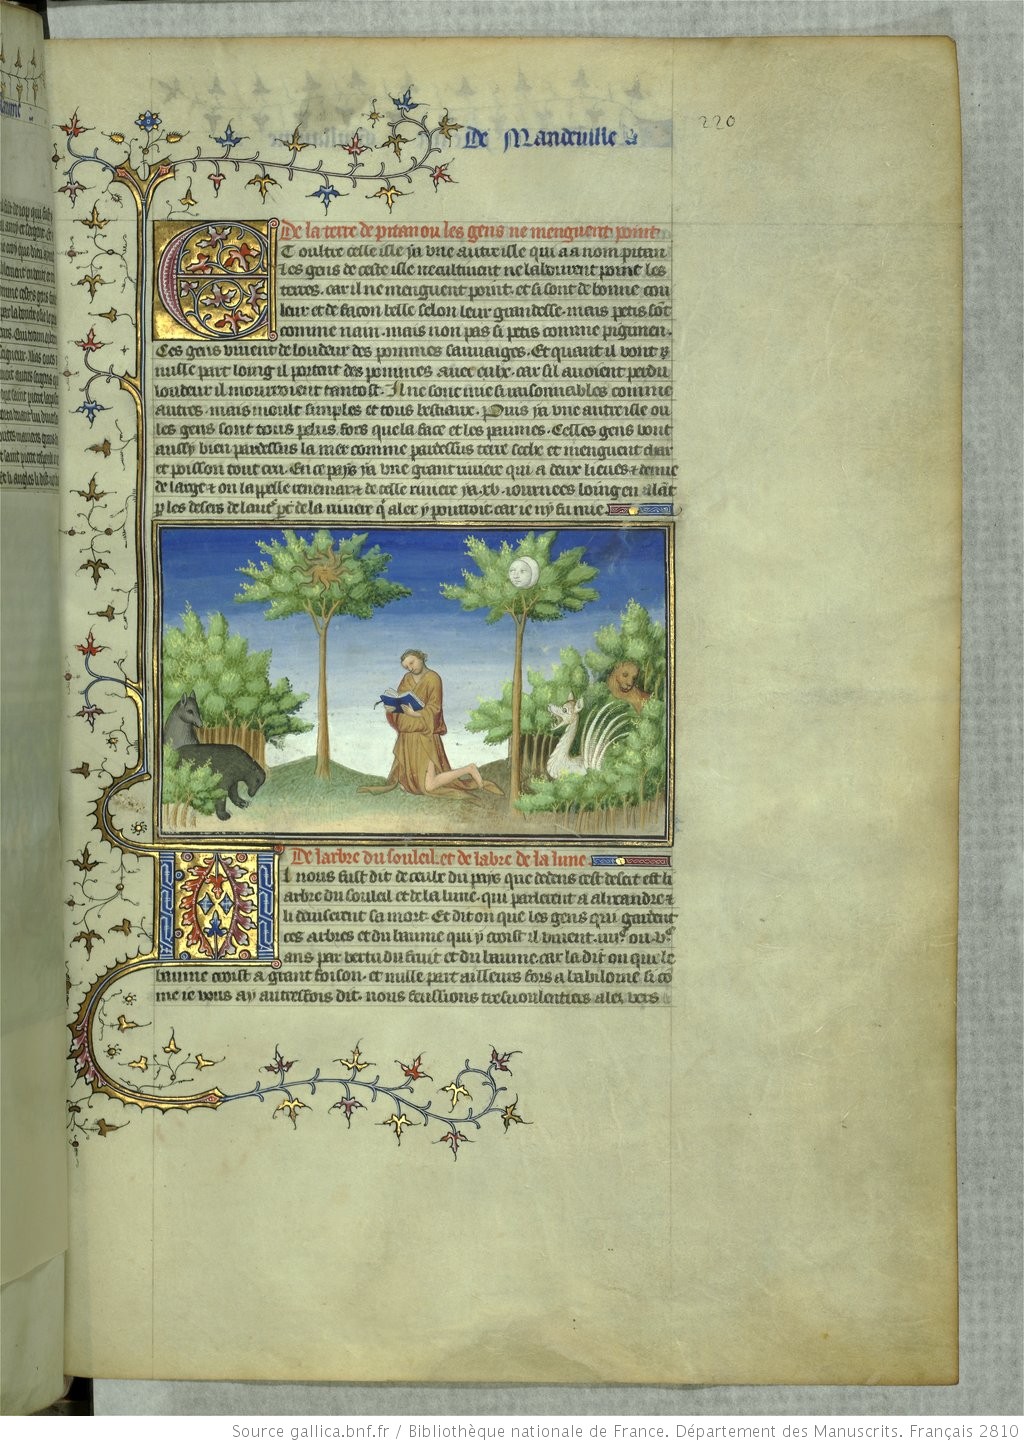 alexandre-devant-les-arbres 1410-12 Voyages de Jean de mandeville BnF, Français 2810 f.220